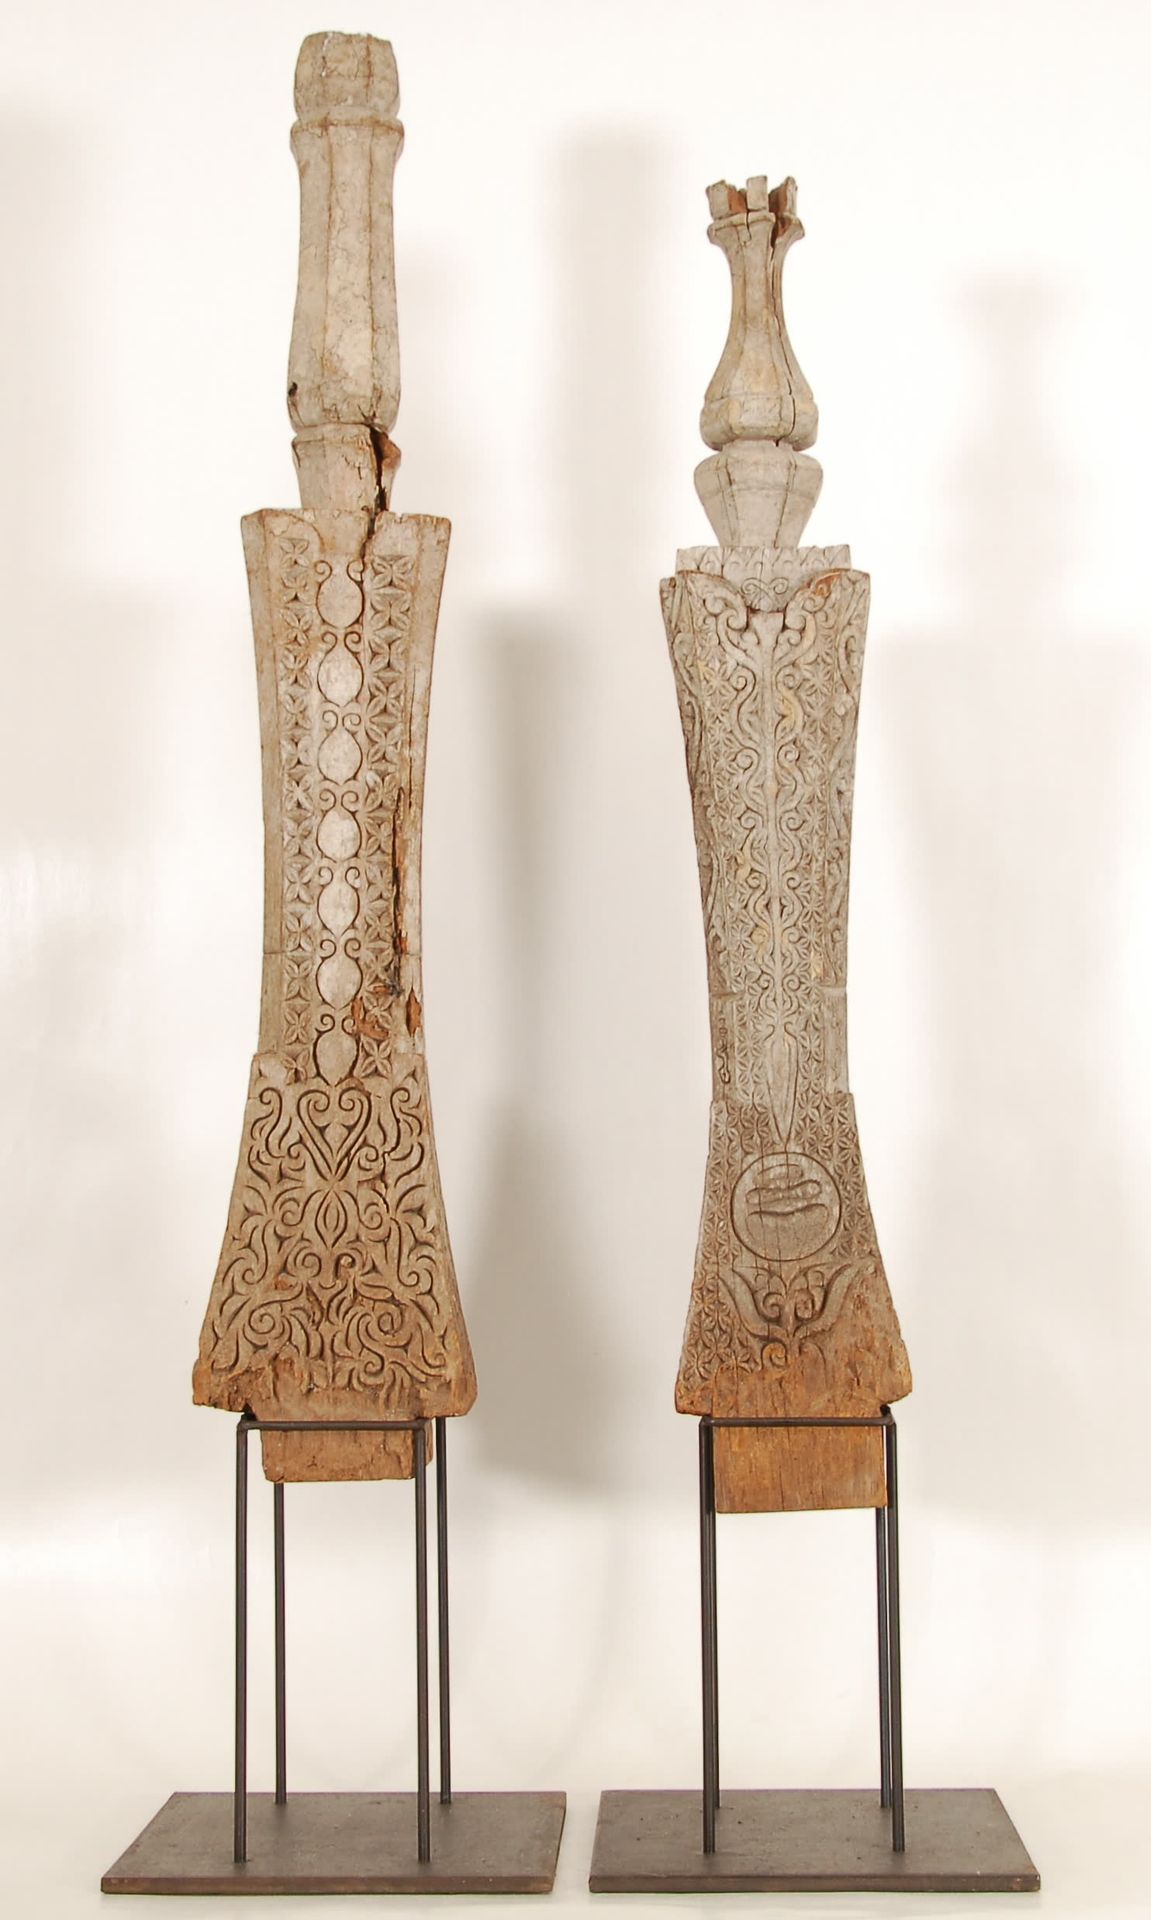 Null 两个领土标记
木头上雕刻着植物图案。帝汶。
，高104厘米和95厘米。